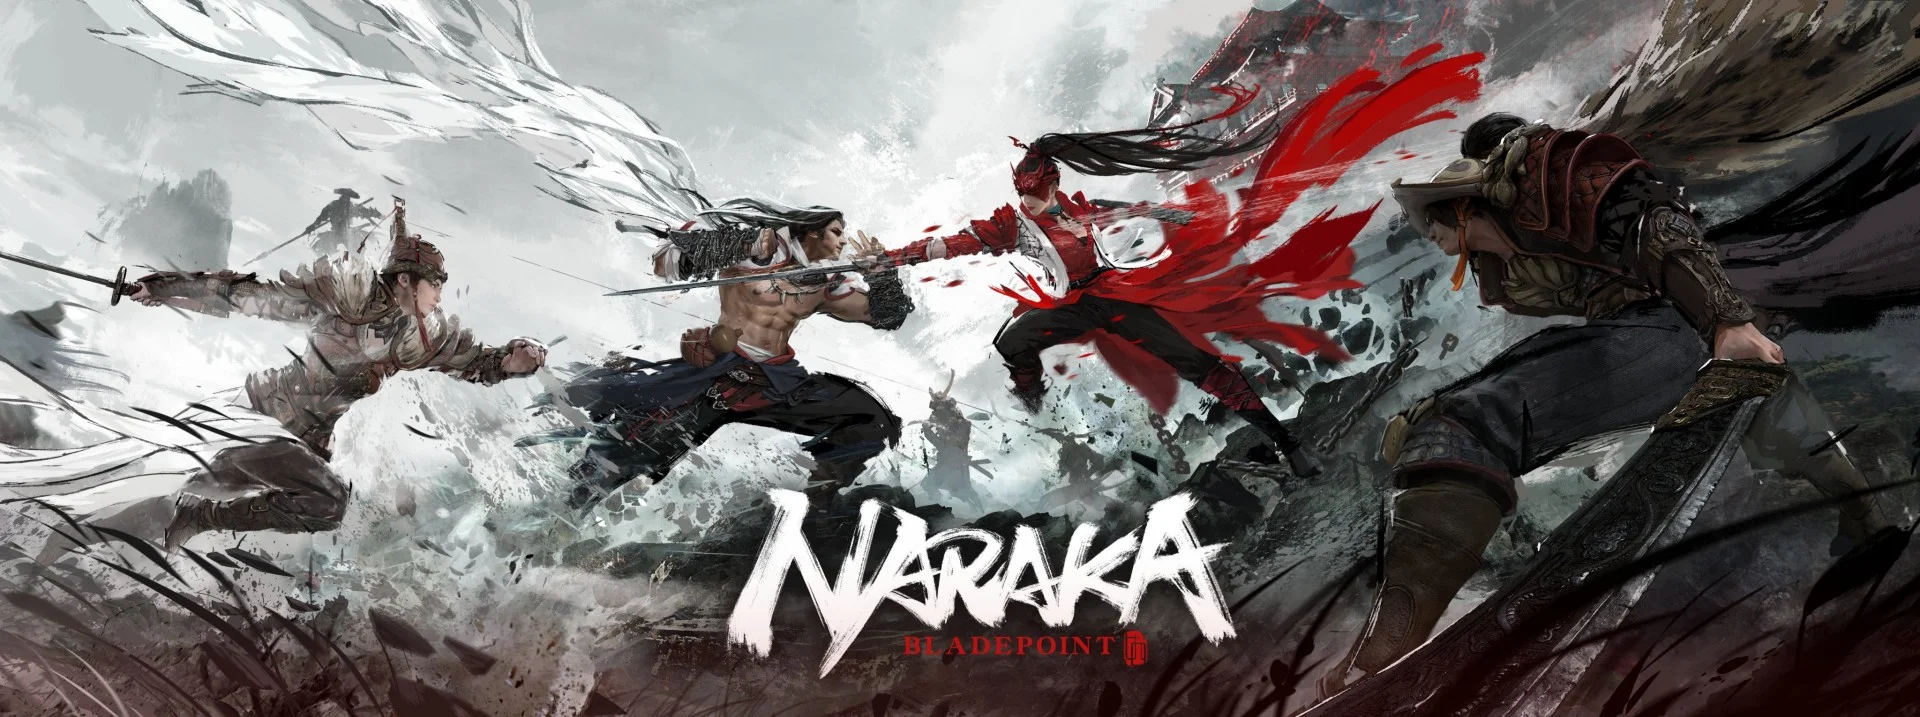 В ходе The Game Awards представят игру Naraka: Bladepoint - фото 1